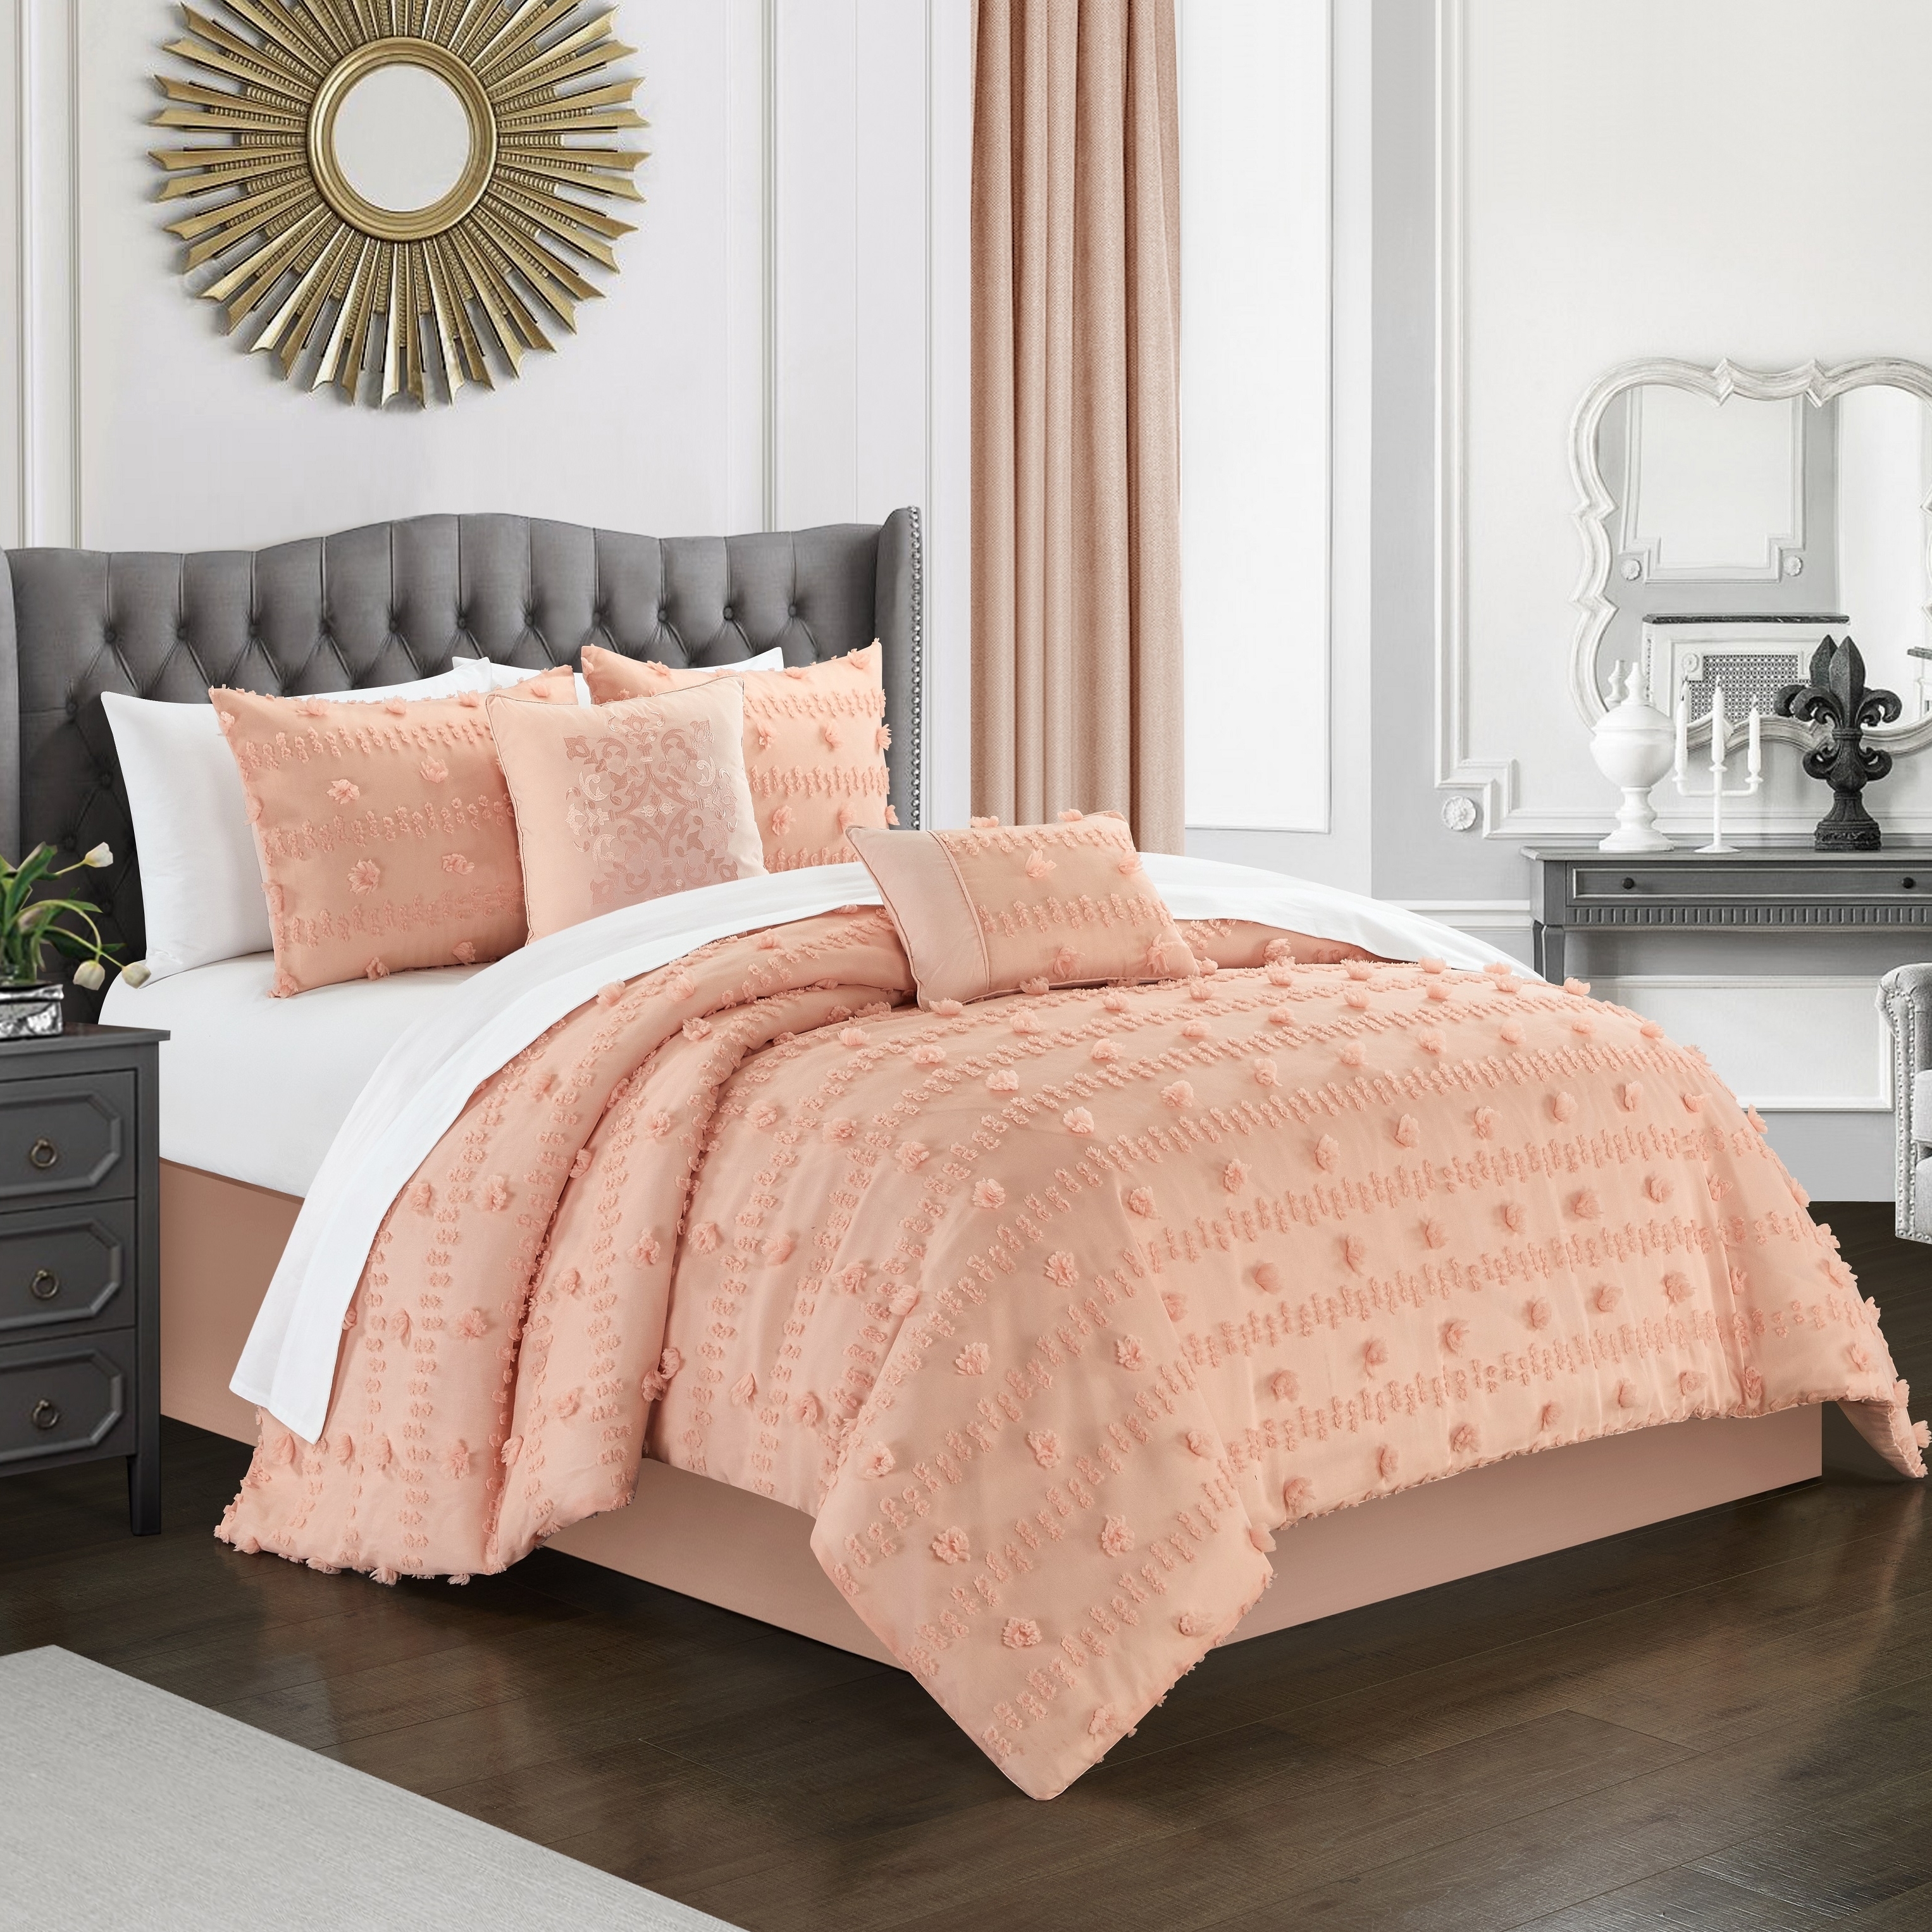 Ahtisa 5 Piece Comforter Set Jacquard Floral Applique Design Bedding - Blush, King